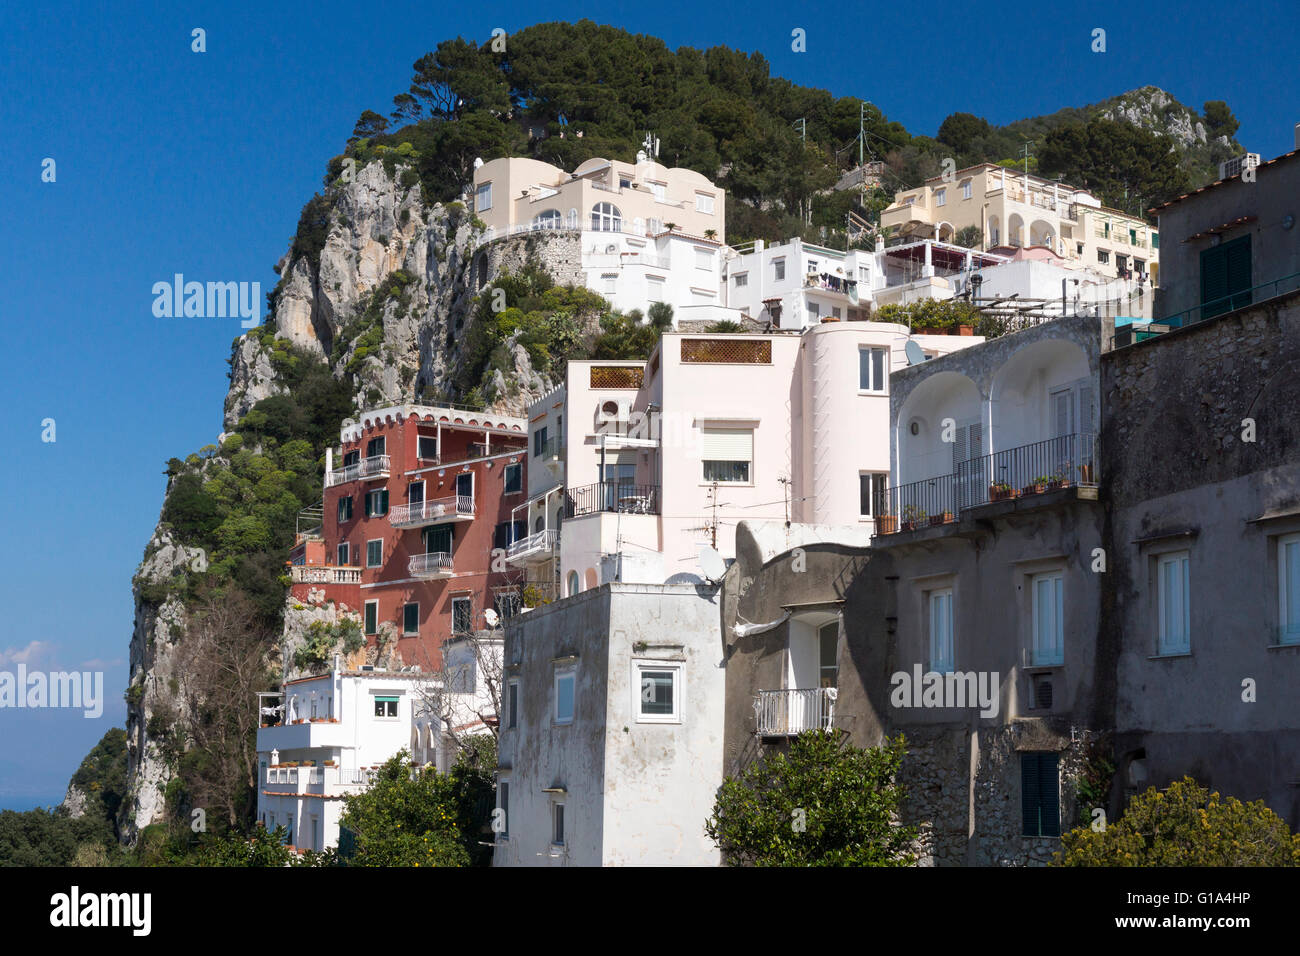 Casas y villas típicas italianas construidas en los acantilados y en la ladera de la montaña del centro de Capri, una isla en el Golfo de Nápoles, Italia Foto de stock